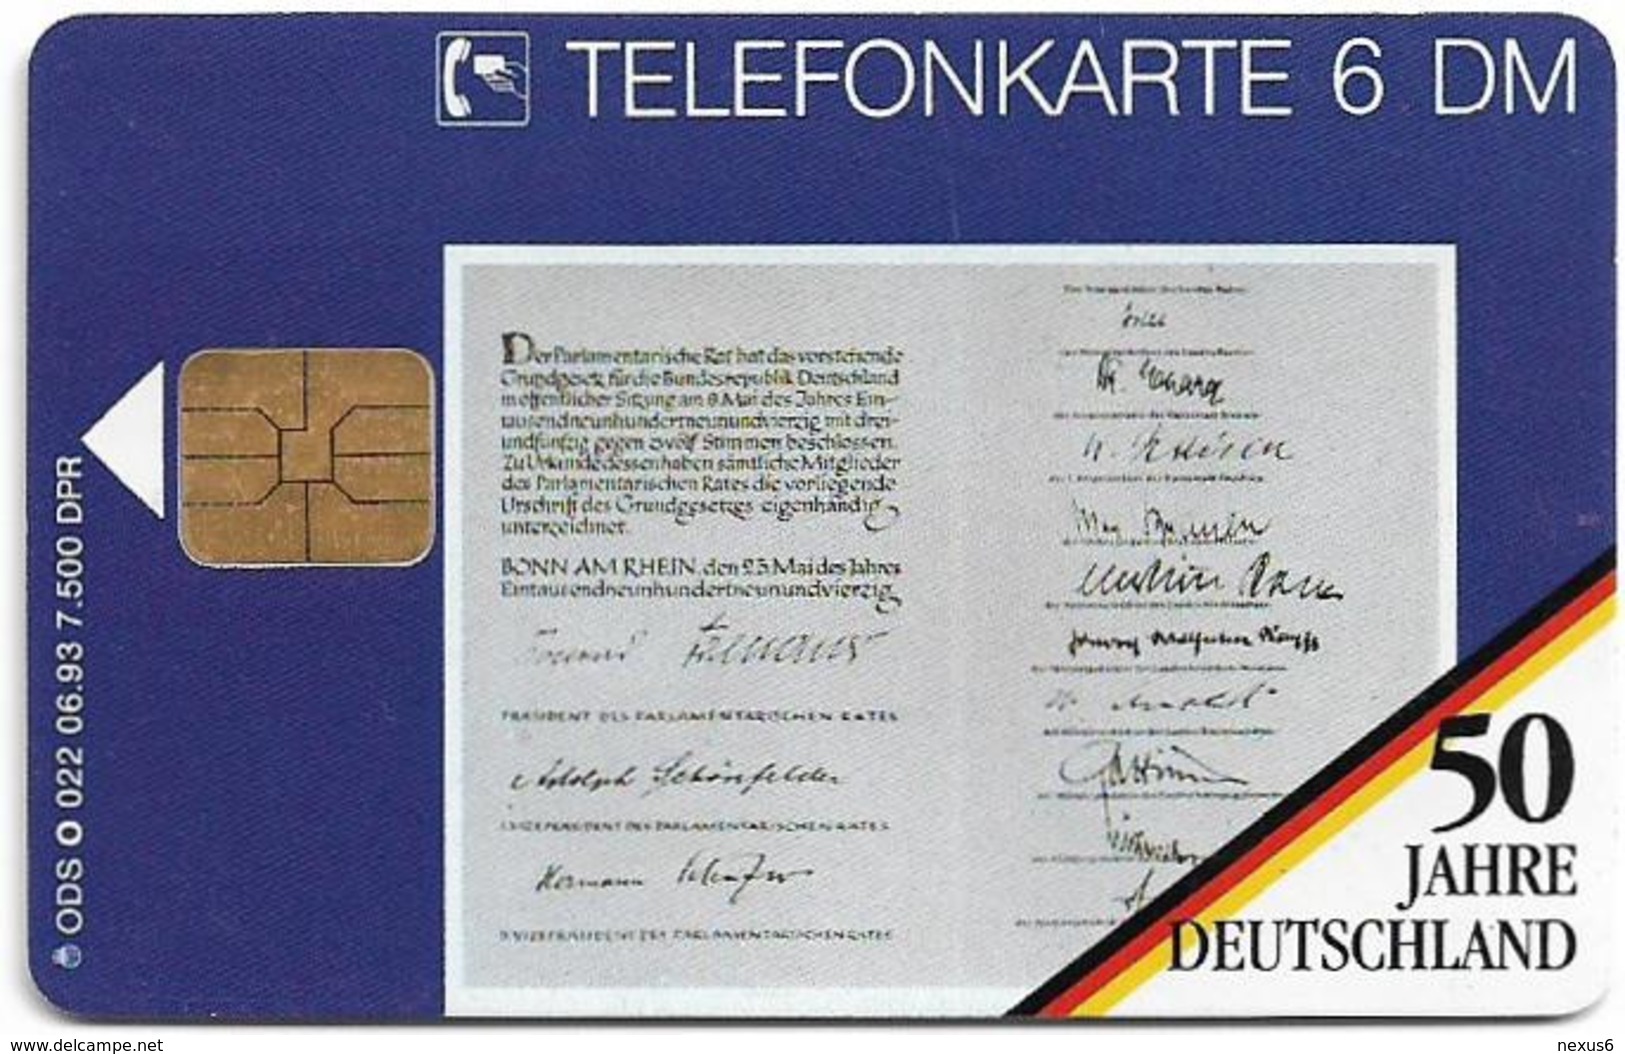 Germany - 50 Jahre Deutschland - Konrad Adenauer - O 0022 - 06.93, 6DM, 7.500ex, Used - O-Serie : Serie Clienti Esclusi Dal Servizio Delle Collezioni